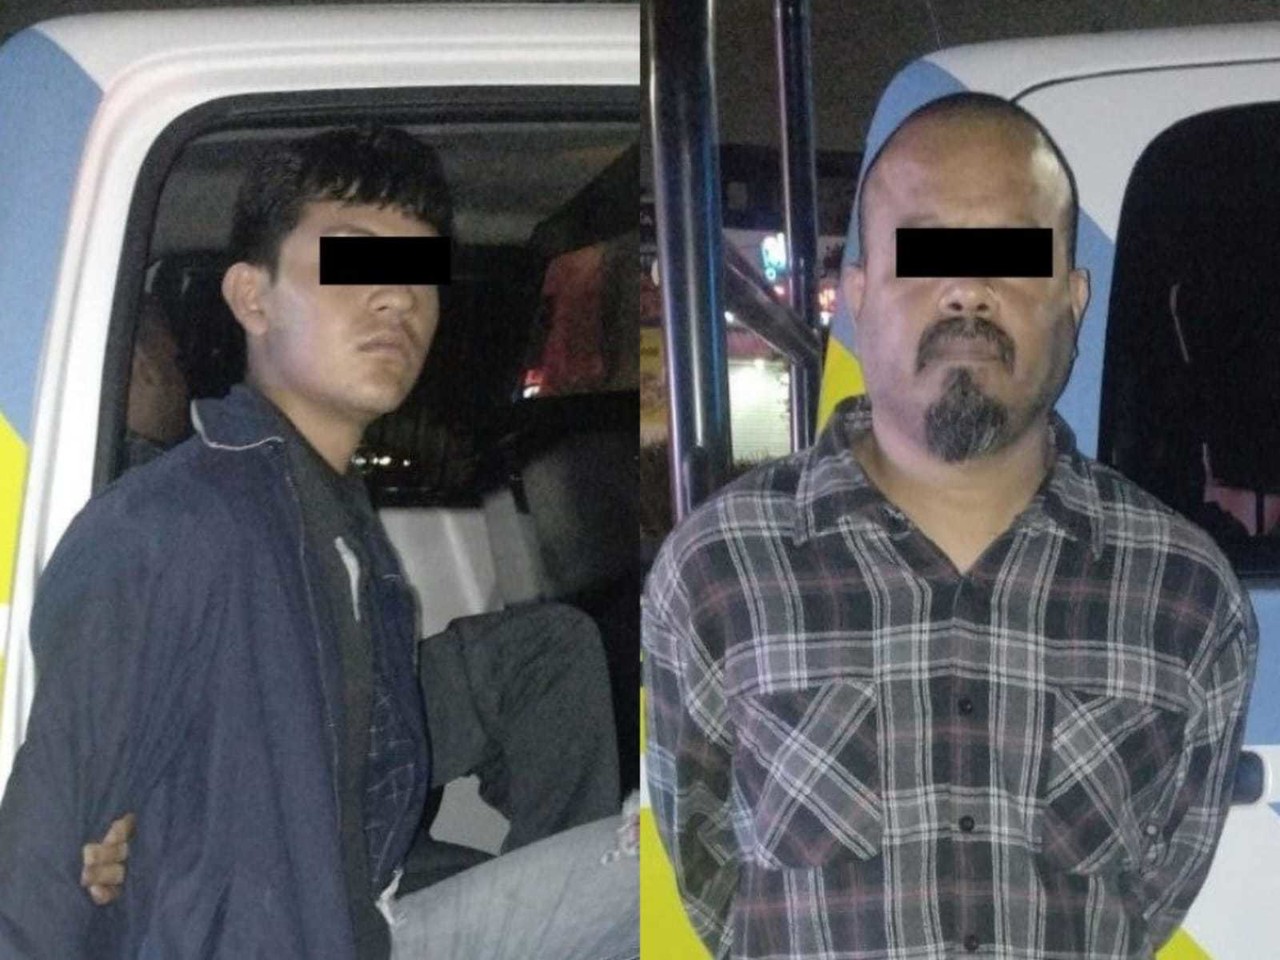 Los hombres fueron trasladados a las instalaciones de la Policía de Monterrey, donde quedaron a disposición de las autoridades correspondientes. Foto: Policía de Monterrey.